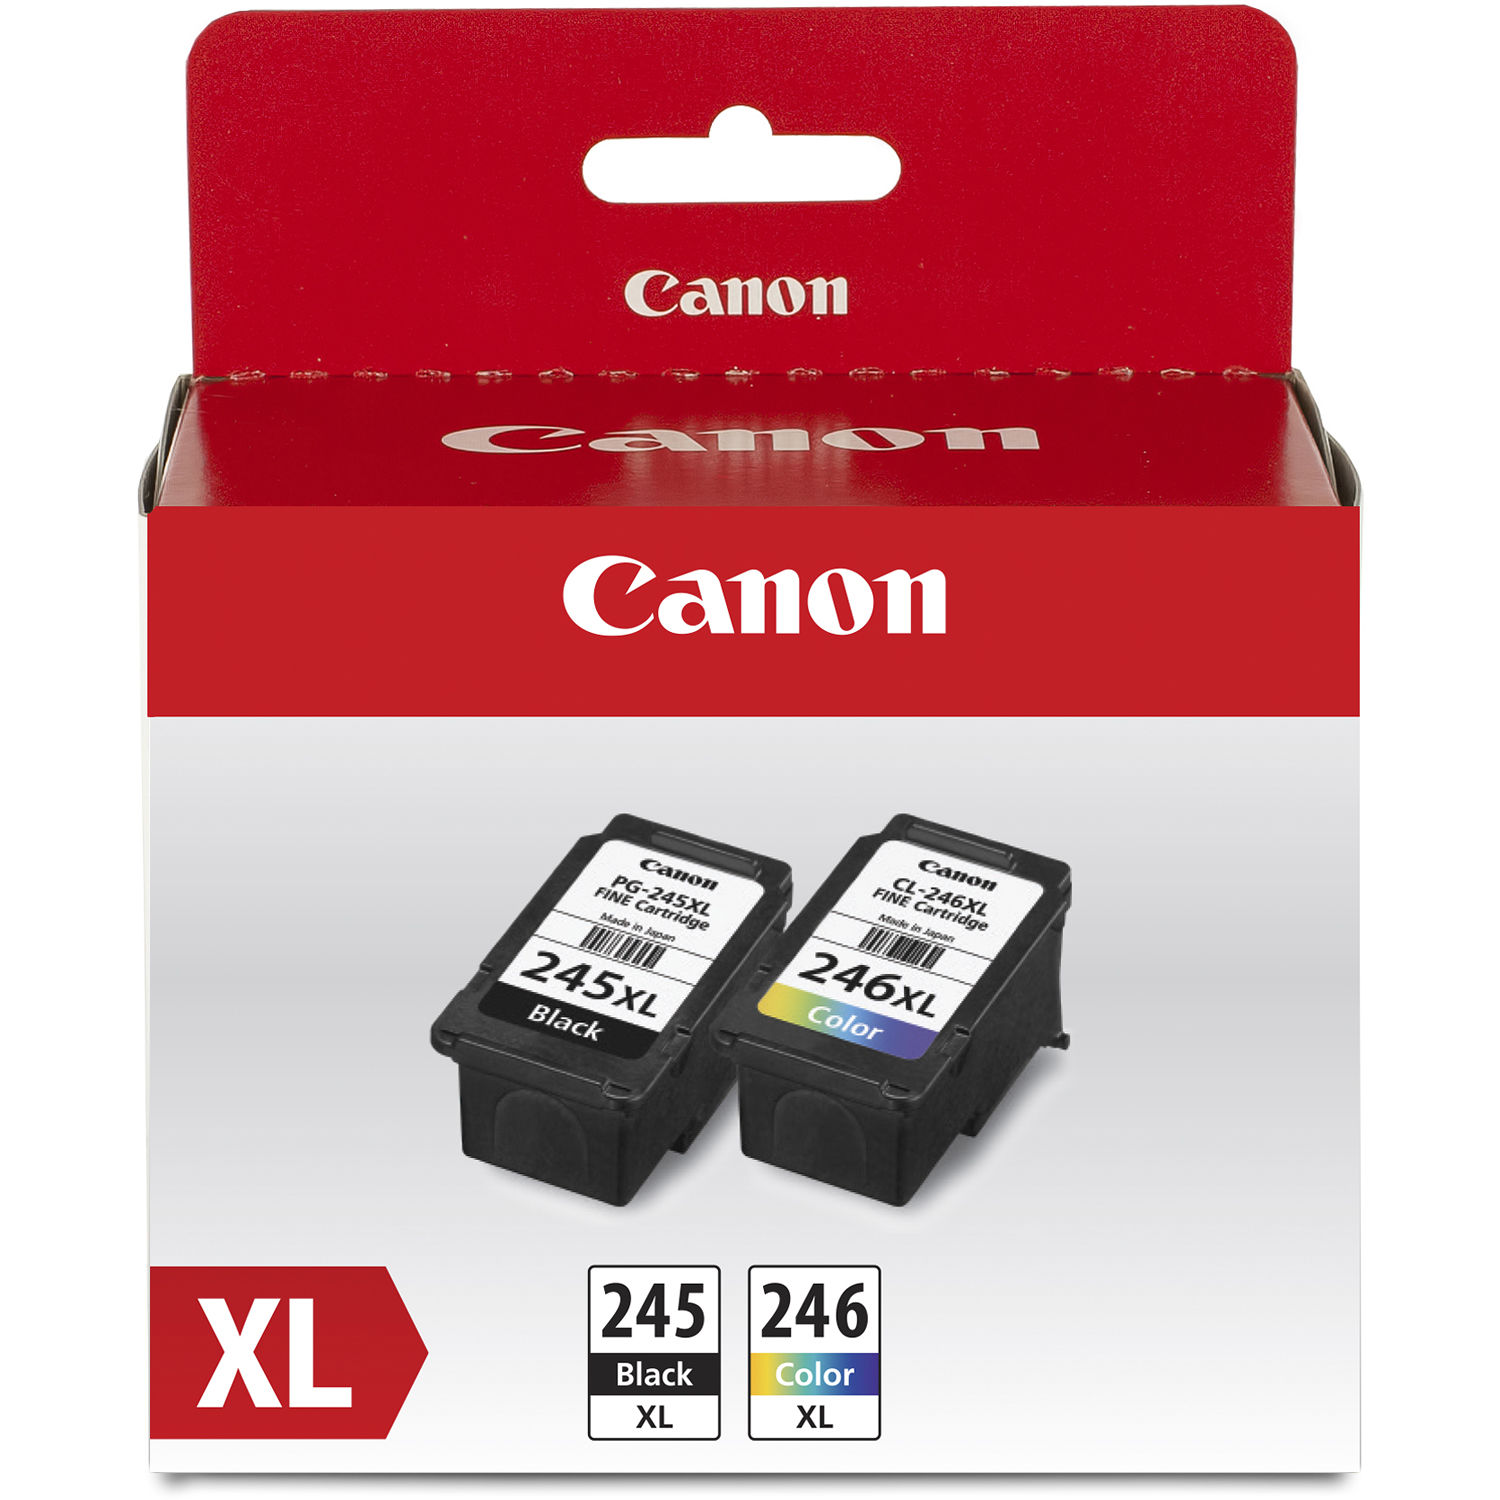 Value Pack Canon Pg 245 Xl Cl 246 Xl para Impresoras Pixma Seleccionadas